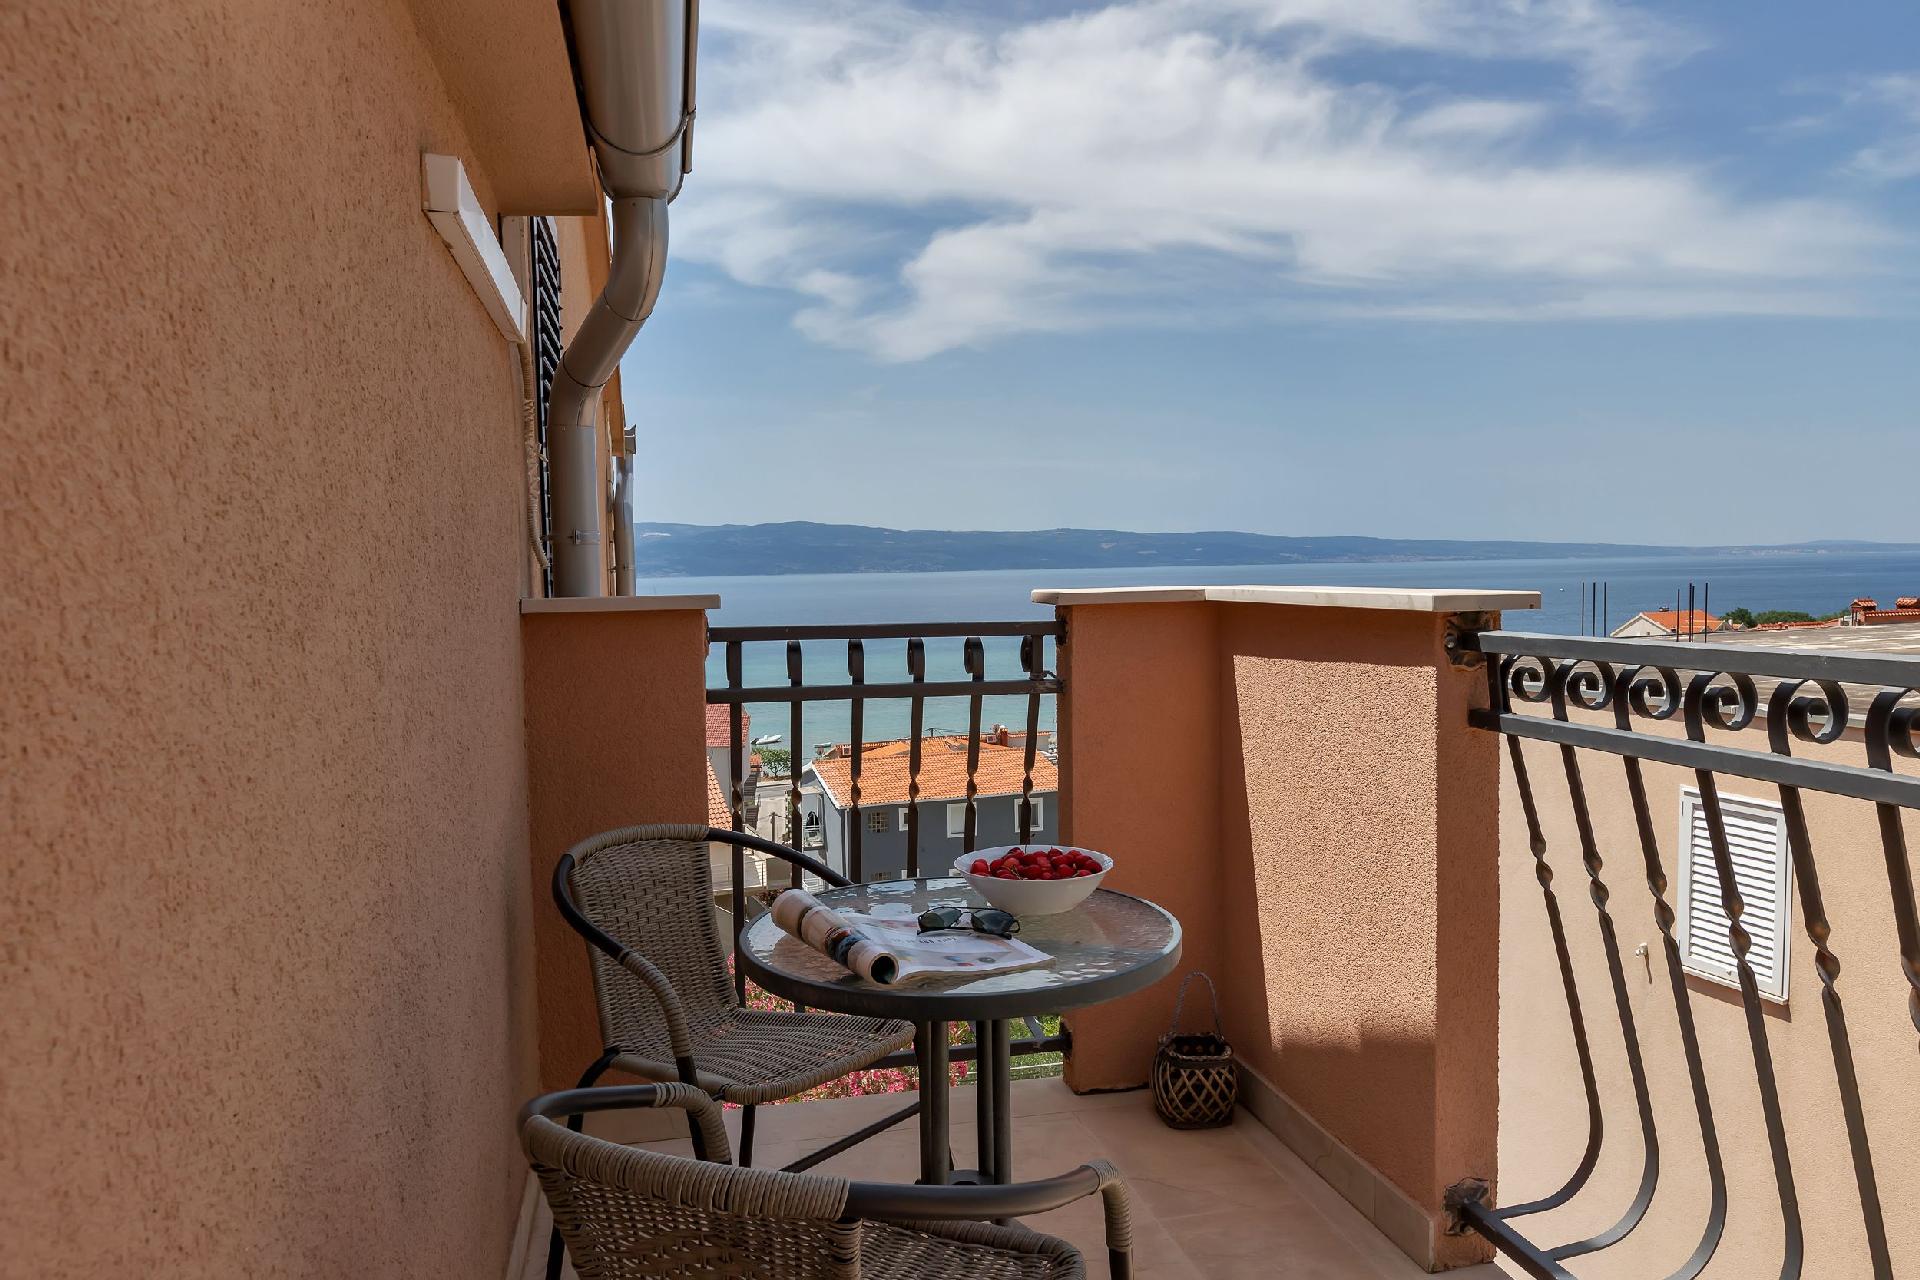 Gästezimmer für zwei Personen mit Balkon Ferienwohnung in Kroatien